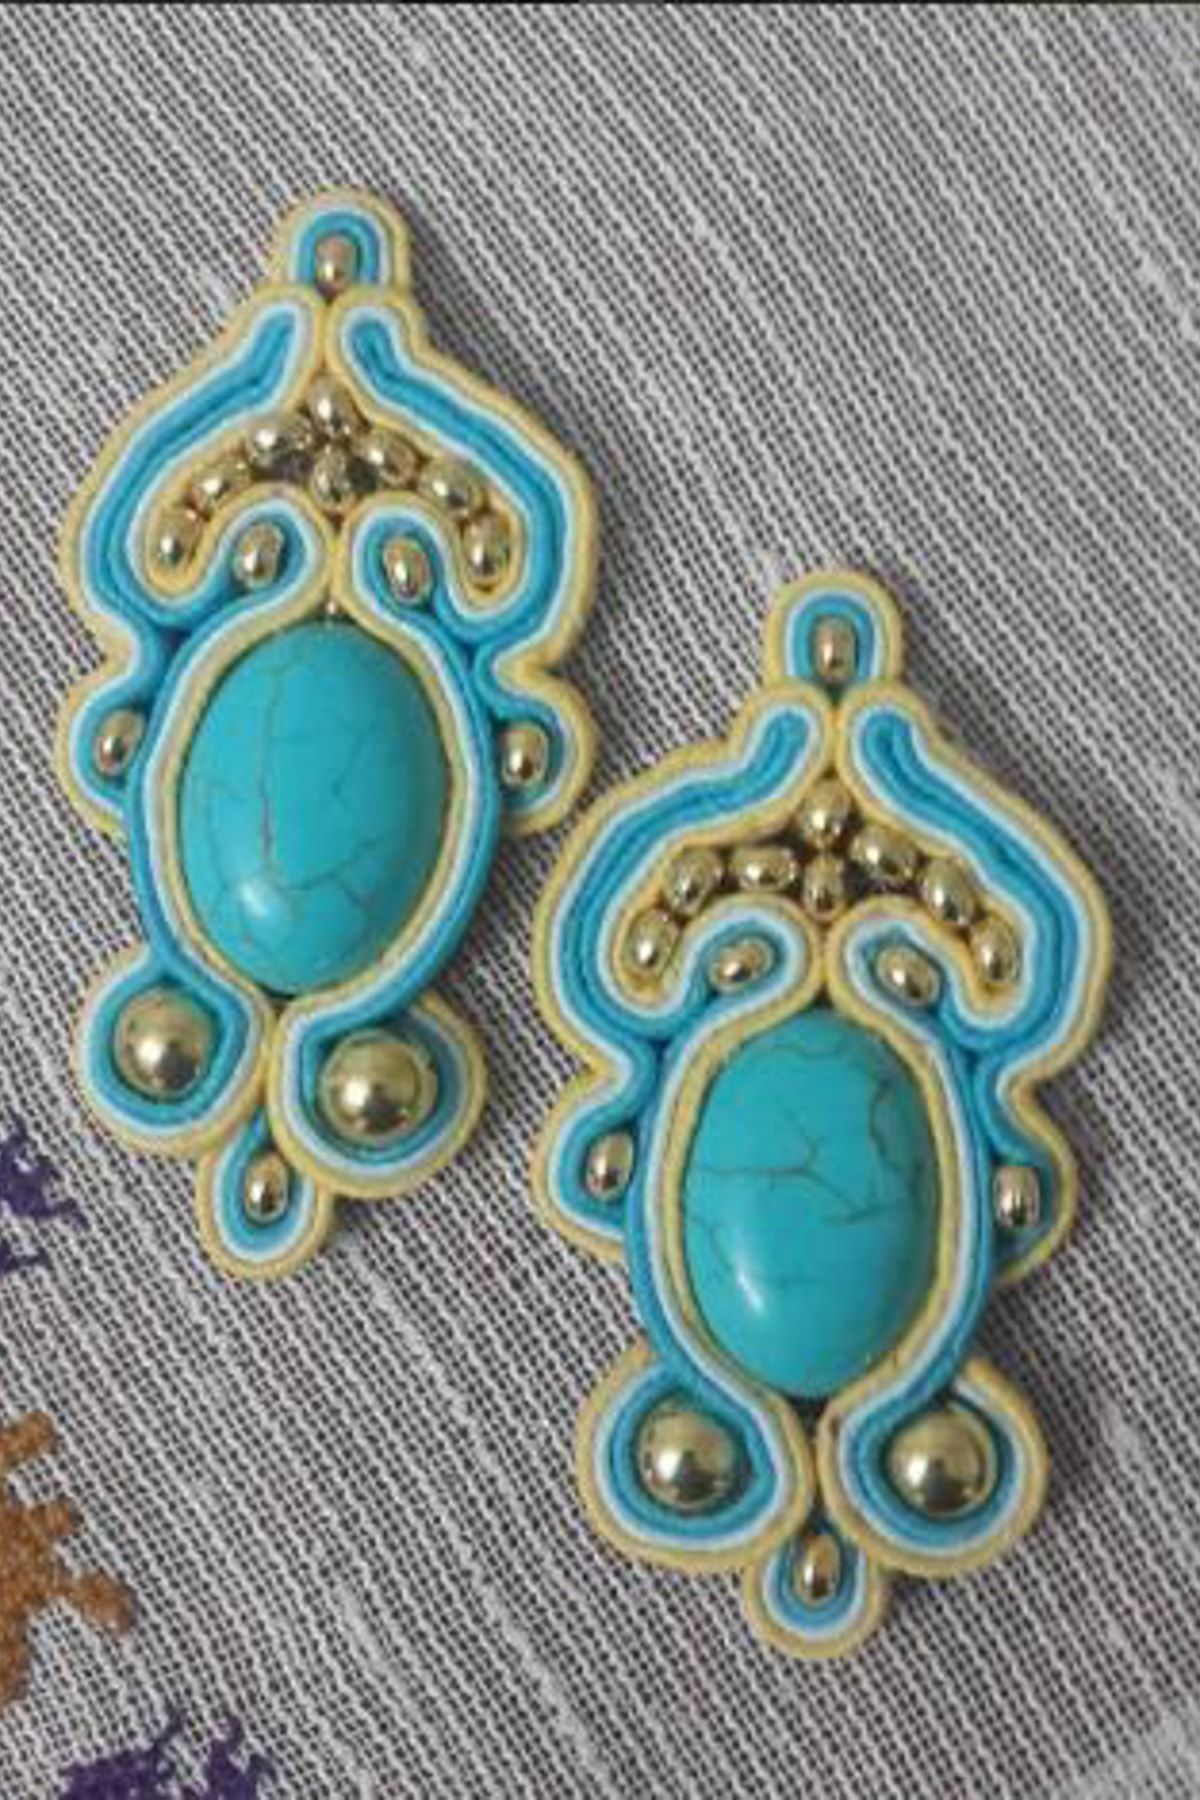 Stoneage Jewellery Özel Tasarım Bayan Küpe Firuze Doğal Taş